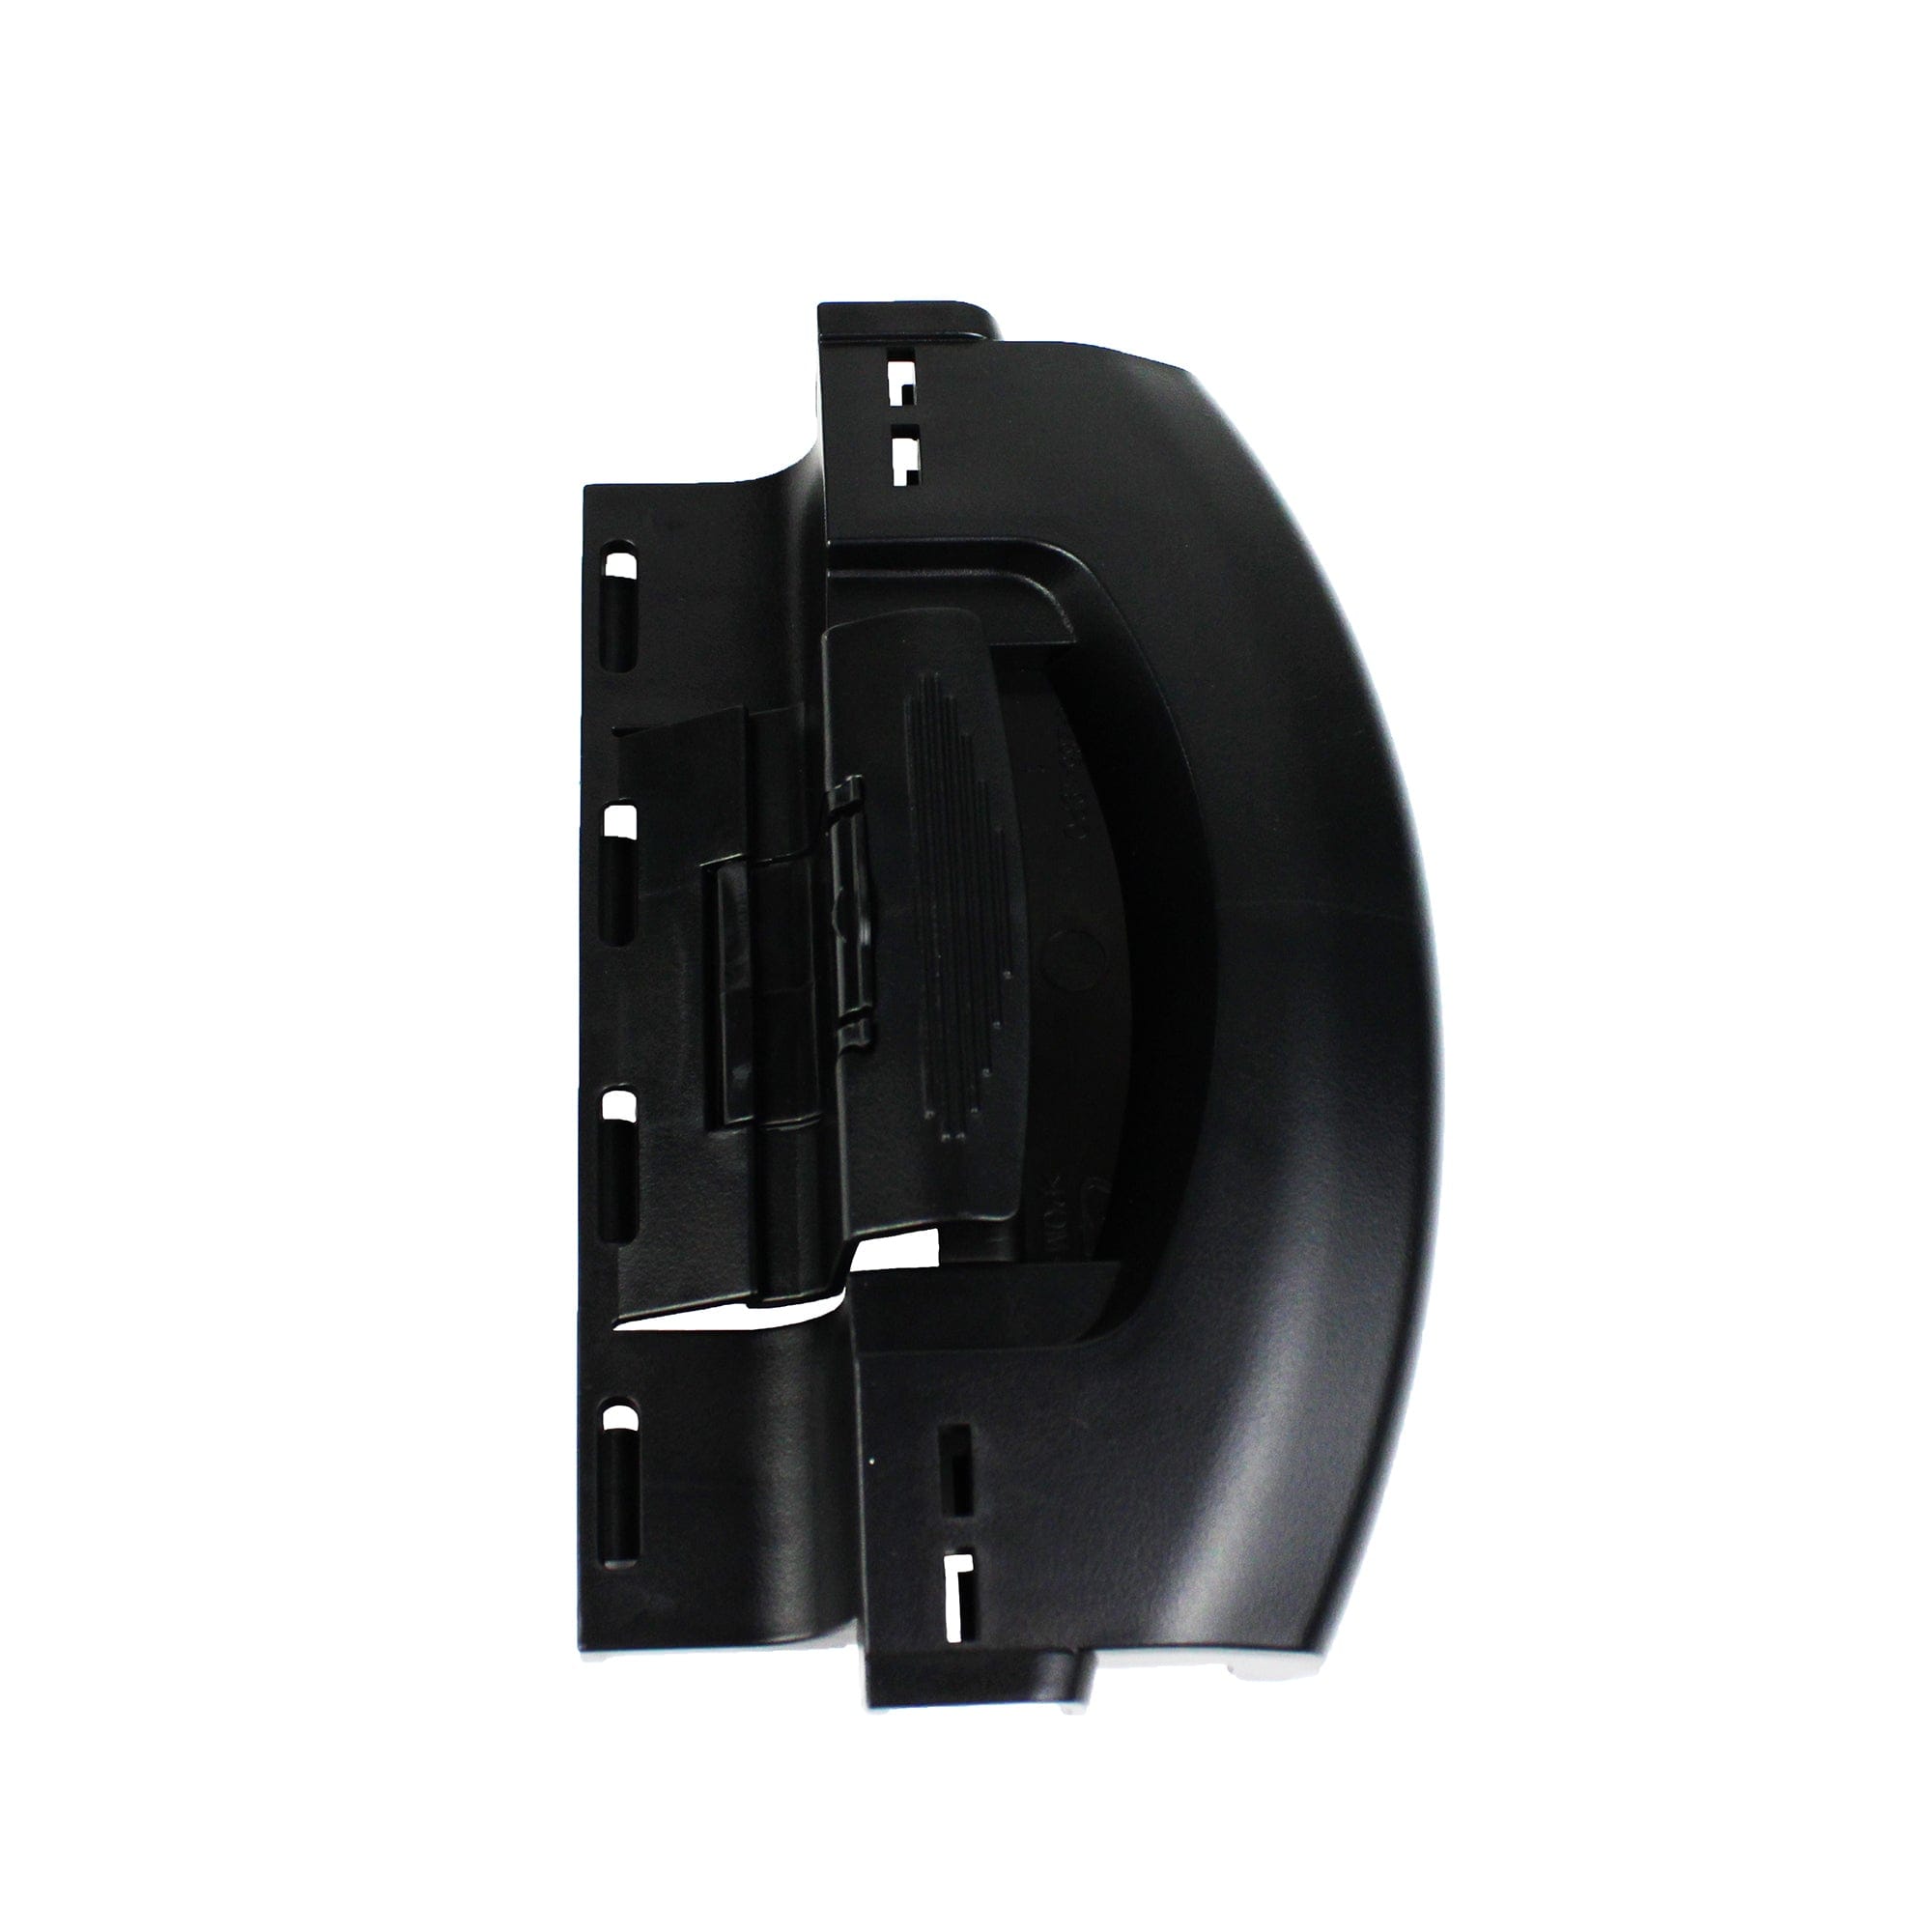 Dometic 4450018323 RV Refrigerator Door Handle Replacement for DMR702, Black